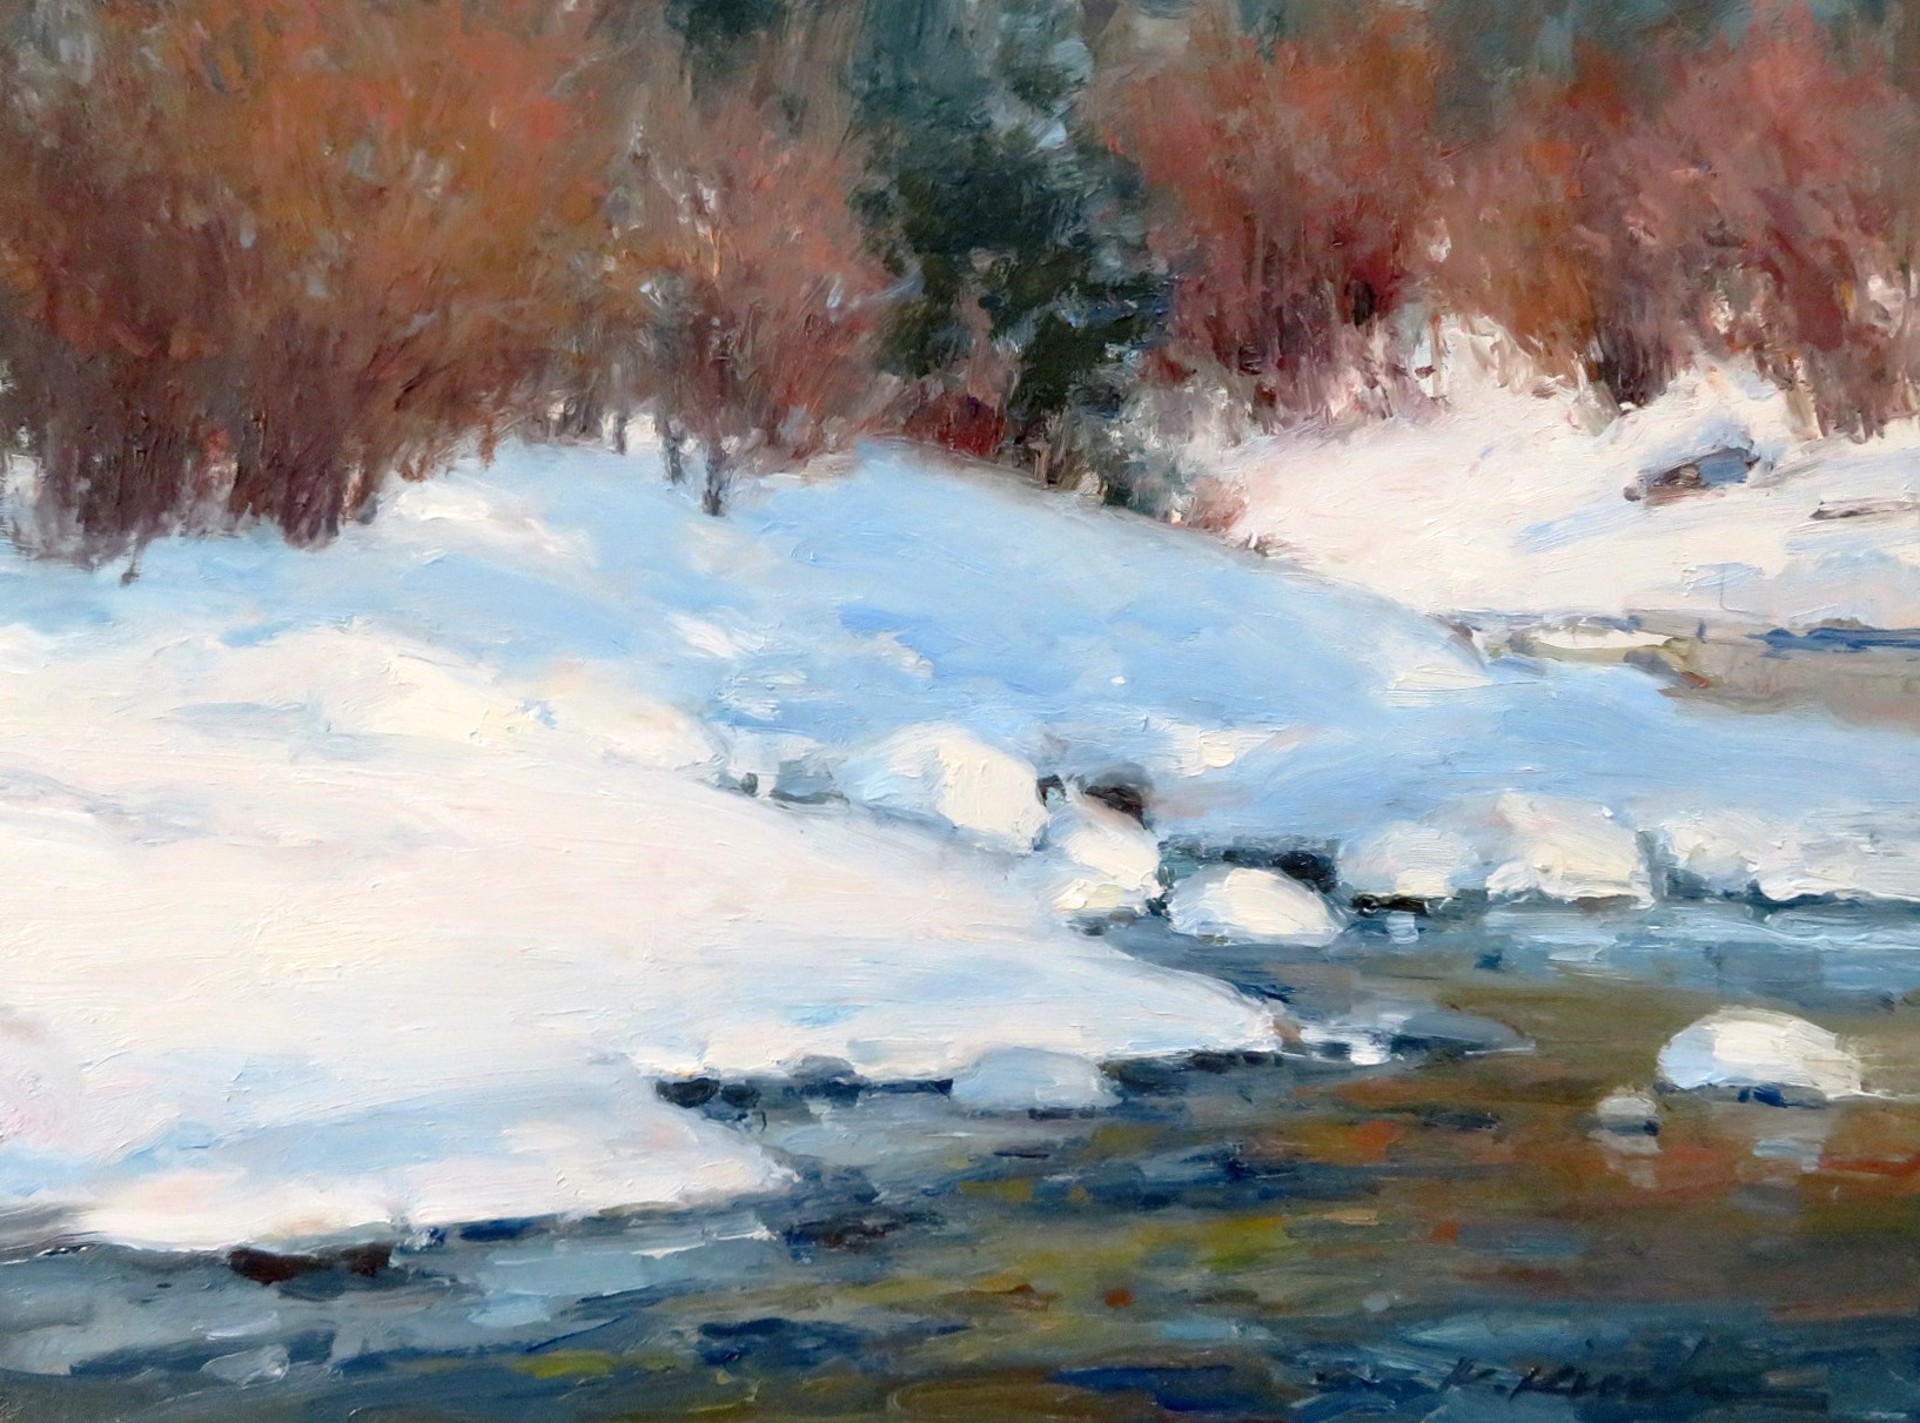 Water's Edge in Winter by Kate Kiesler